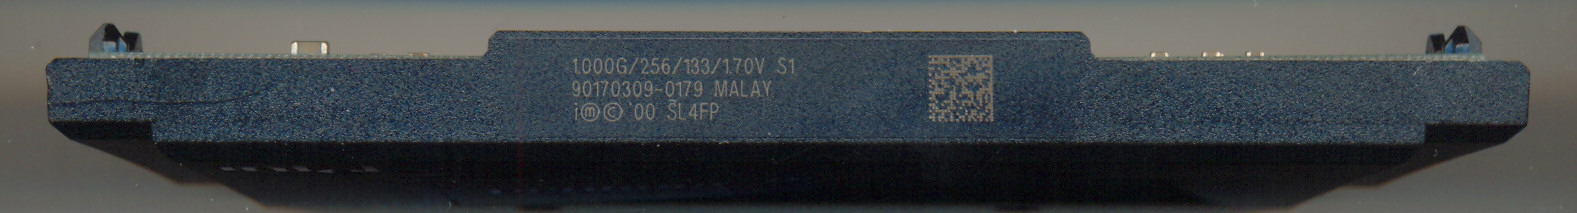 Intel Pentium III 1000G/256/133/1.70V SL4FP